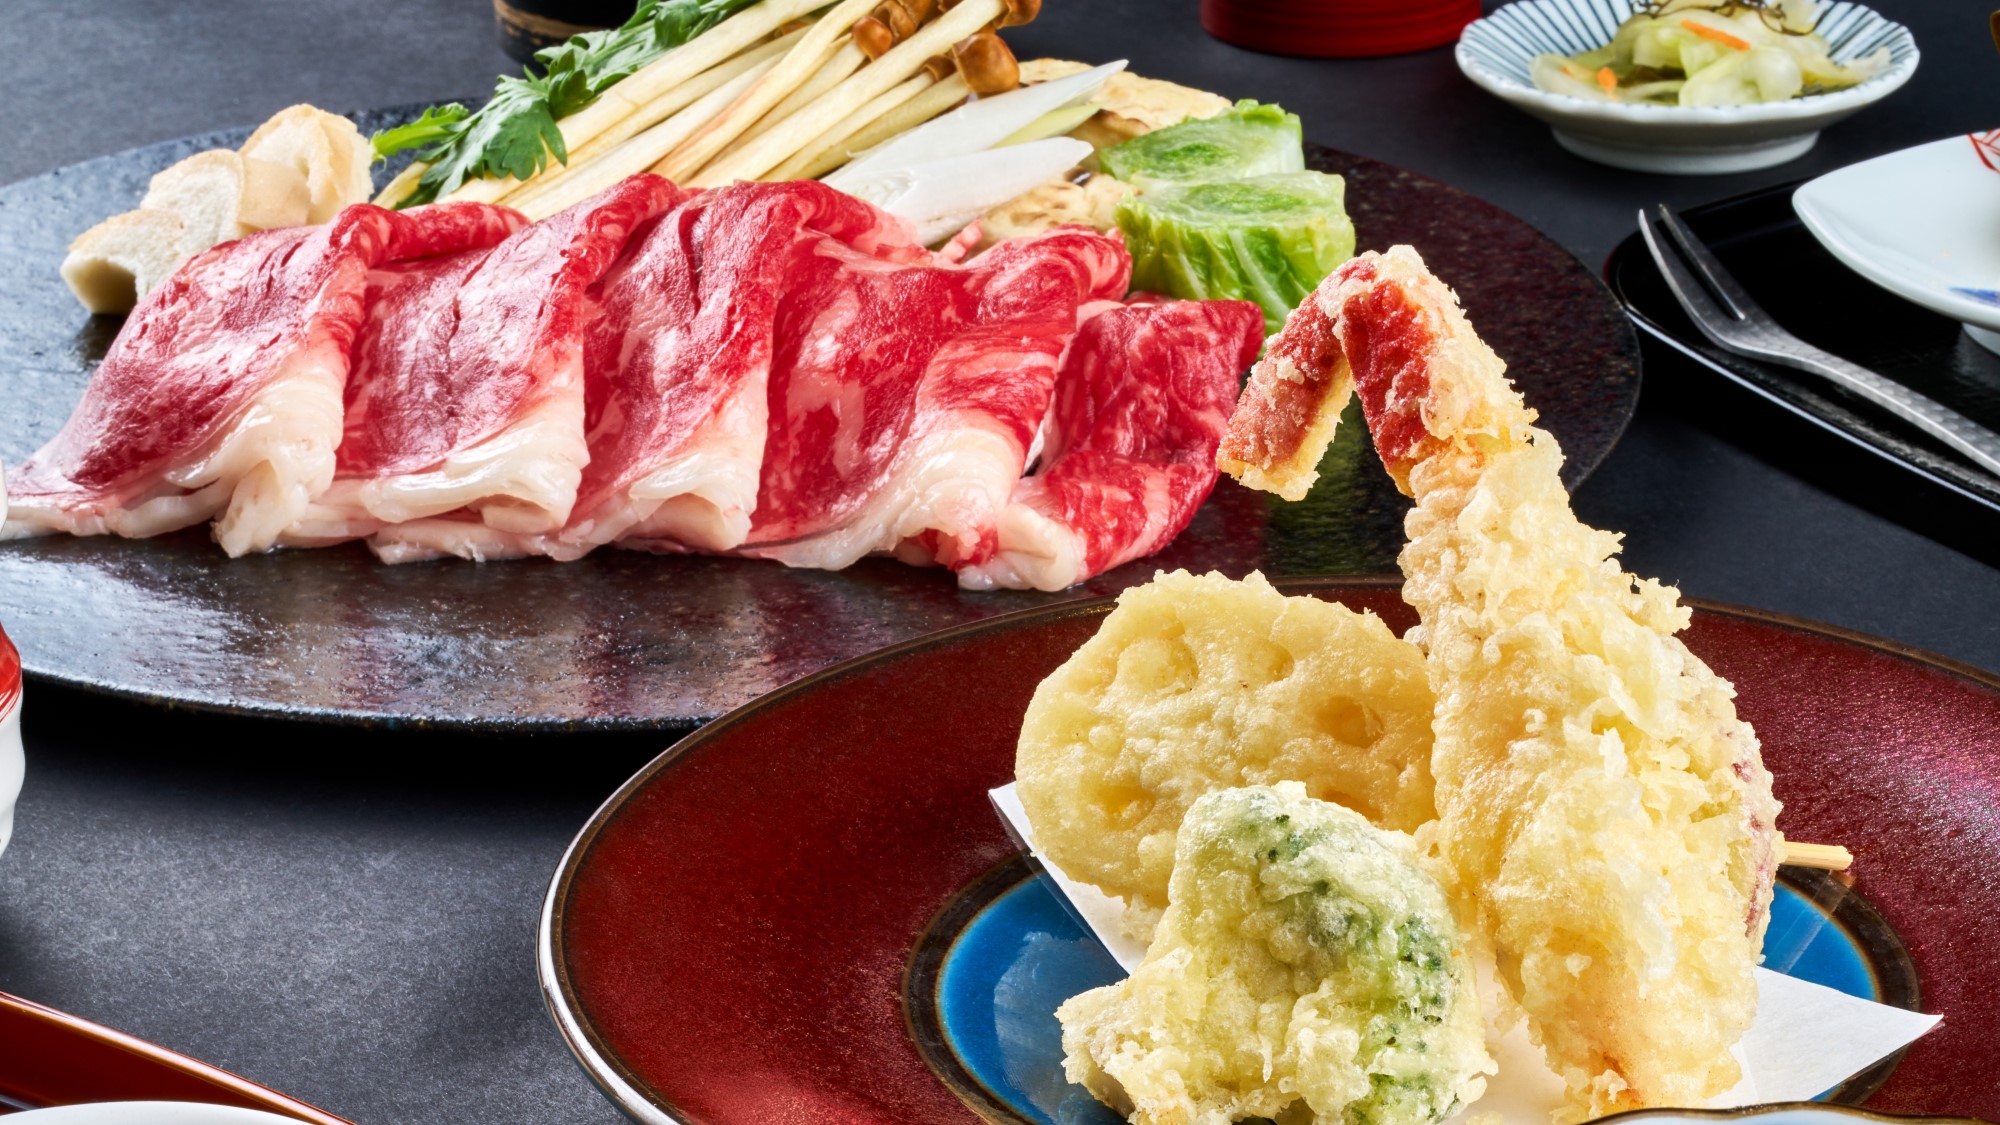 【連泊食】「北海道七飯町産」の牛ロースを使用したすき焼きと、季節で異なる天ぷらをお楽しみください。